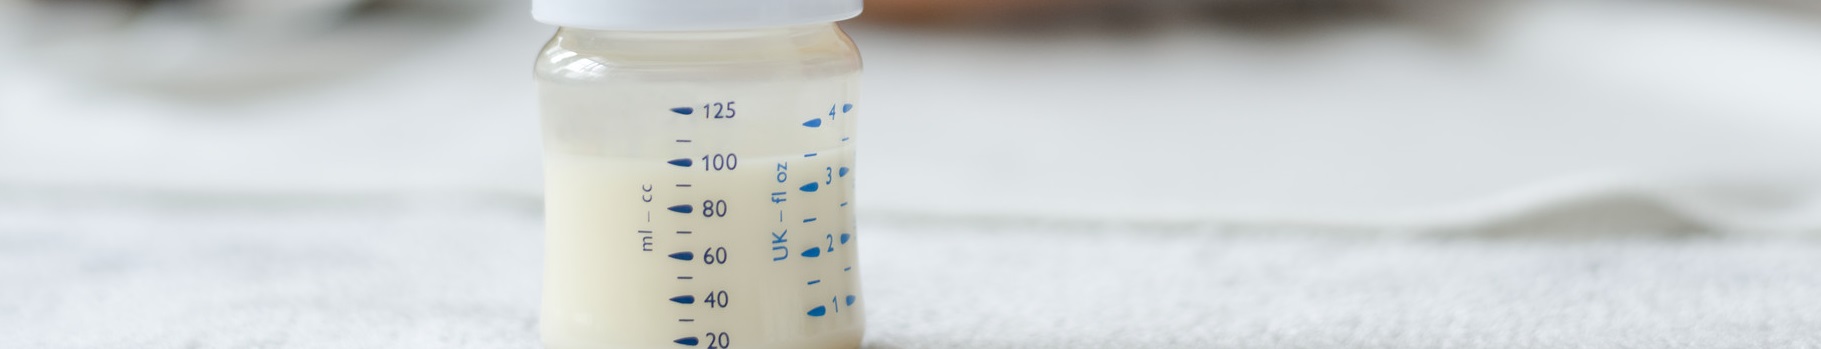 Kiedy podać mleko następne do zadań specjalnych?